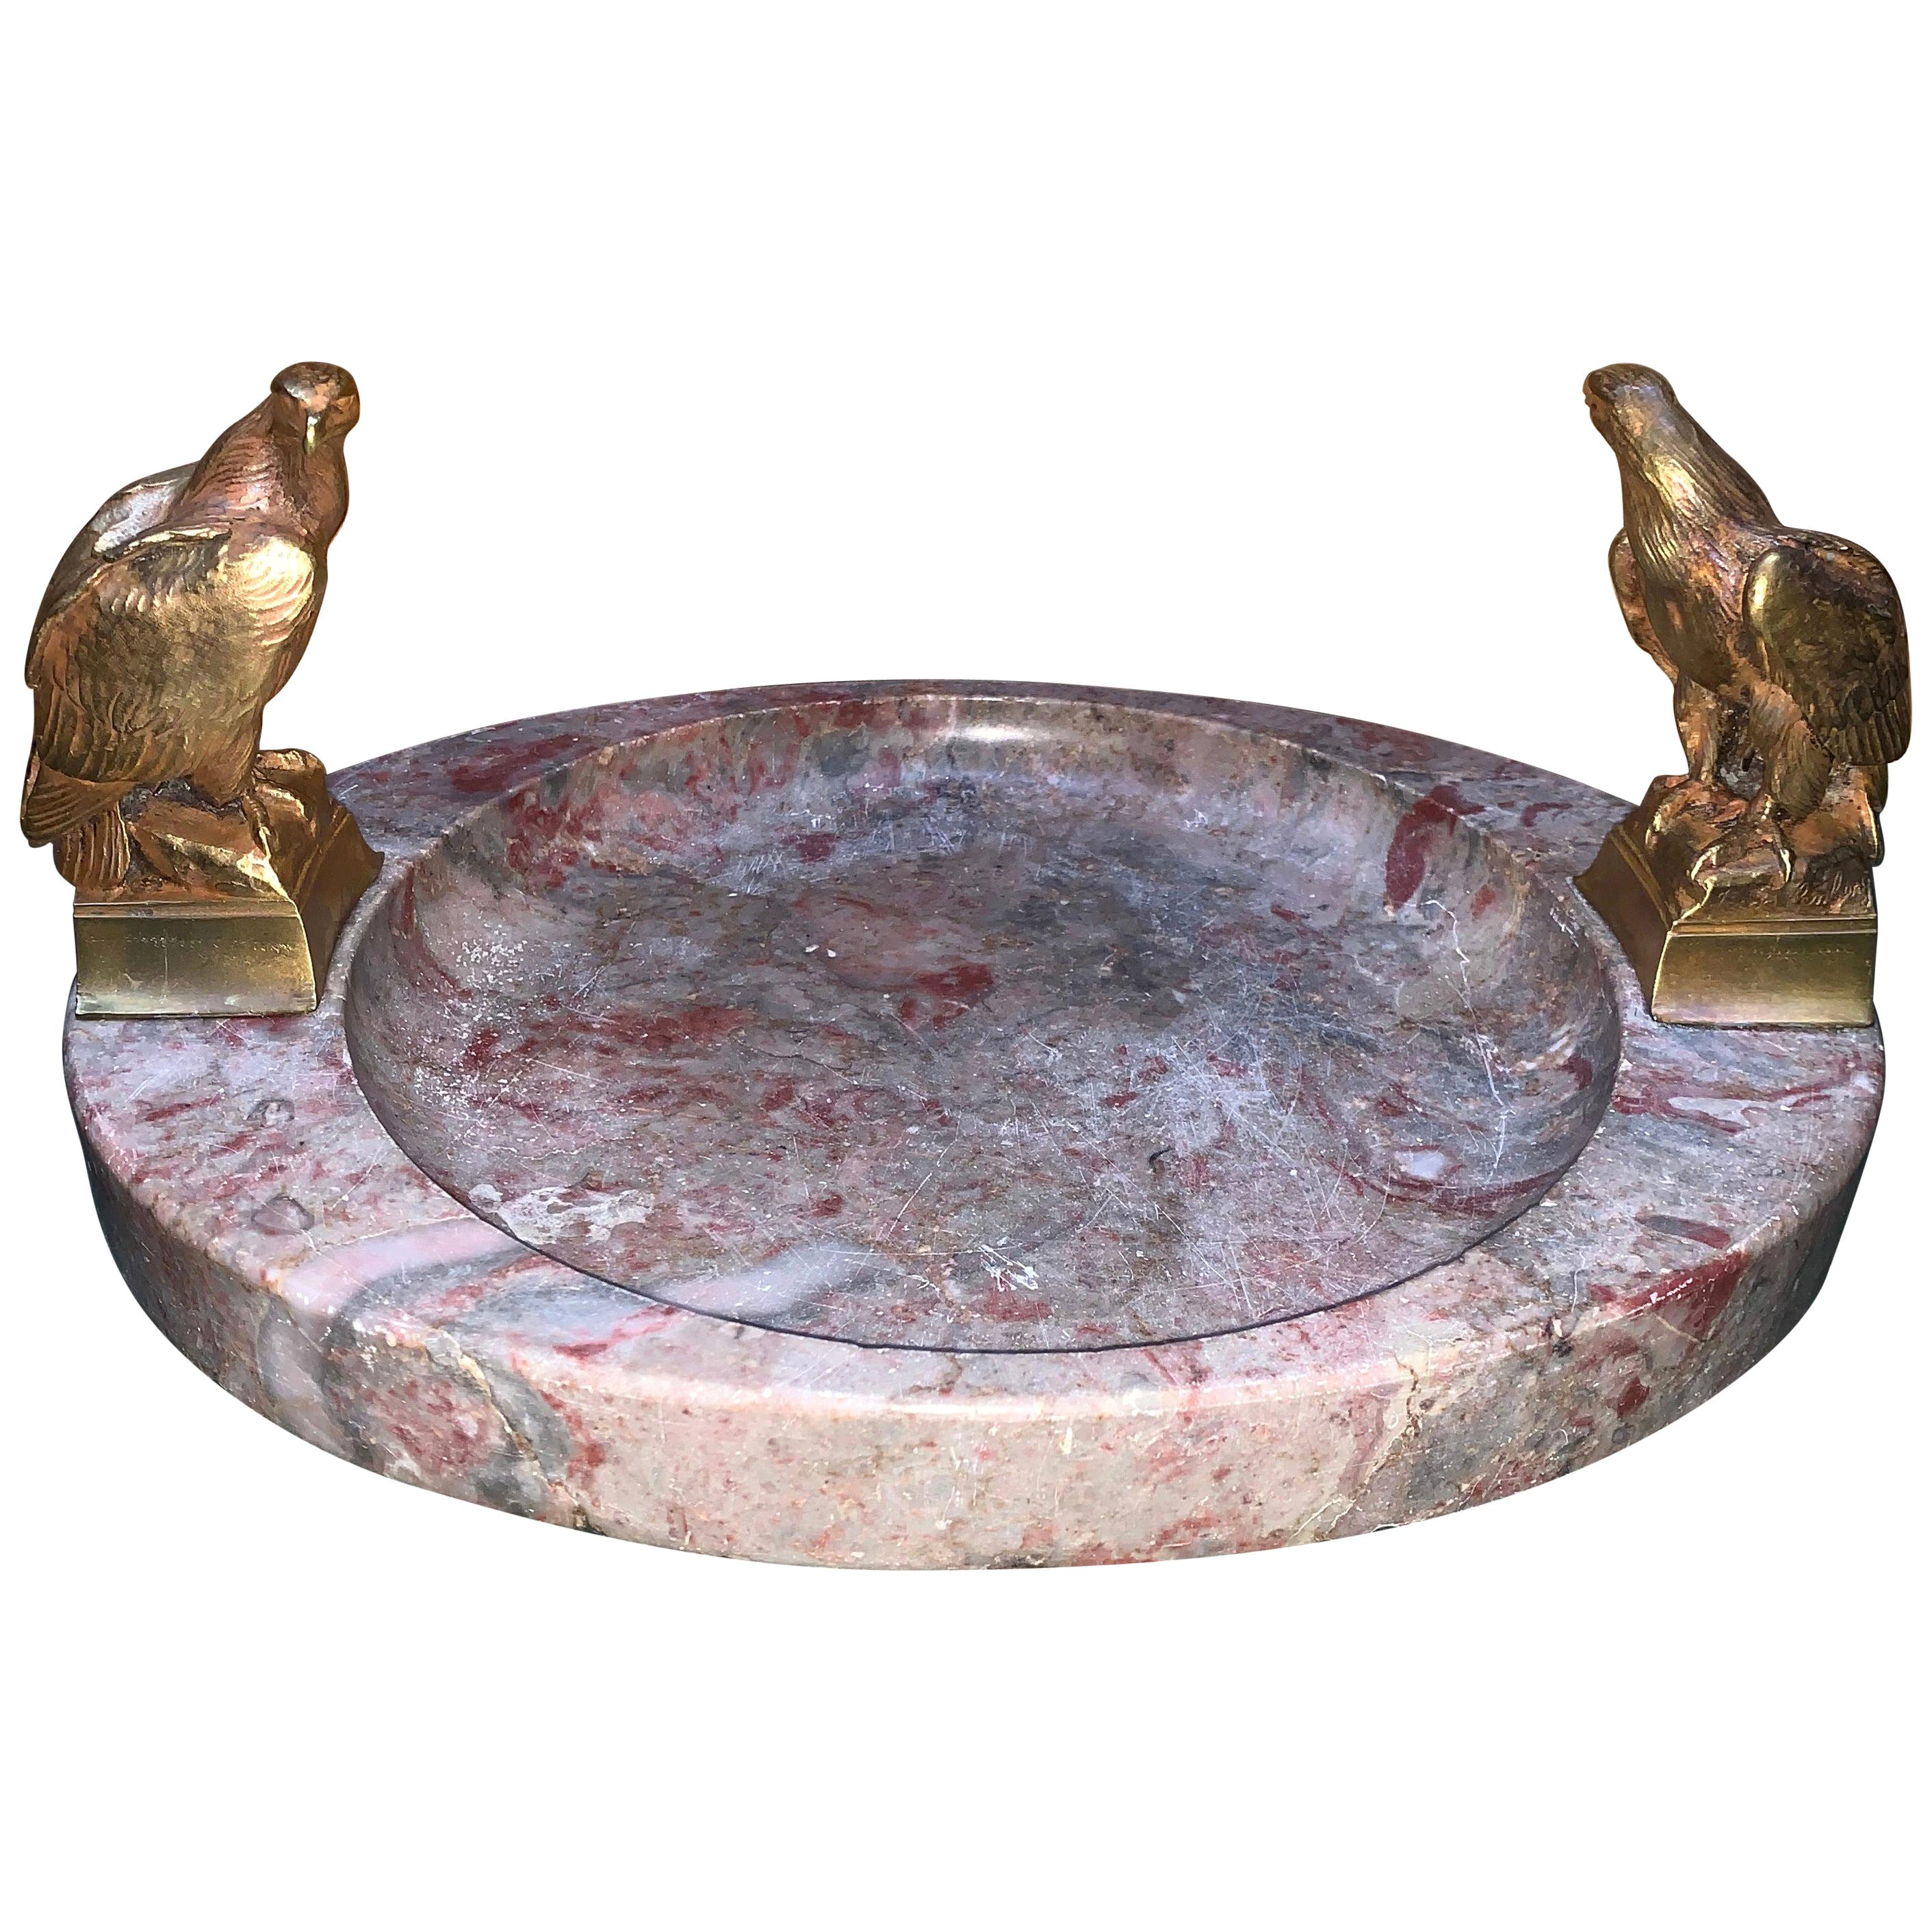 Großer signierter ovaler Aschenbecher oder Tafelaufsatz aus Marmor mit zwei bronzenen Adlern